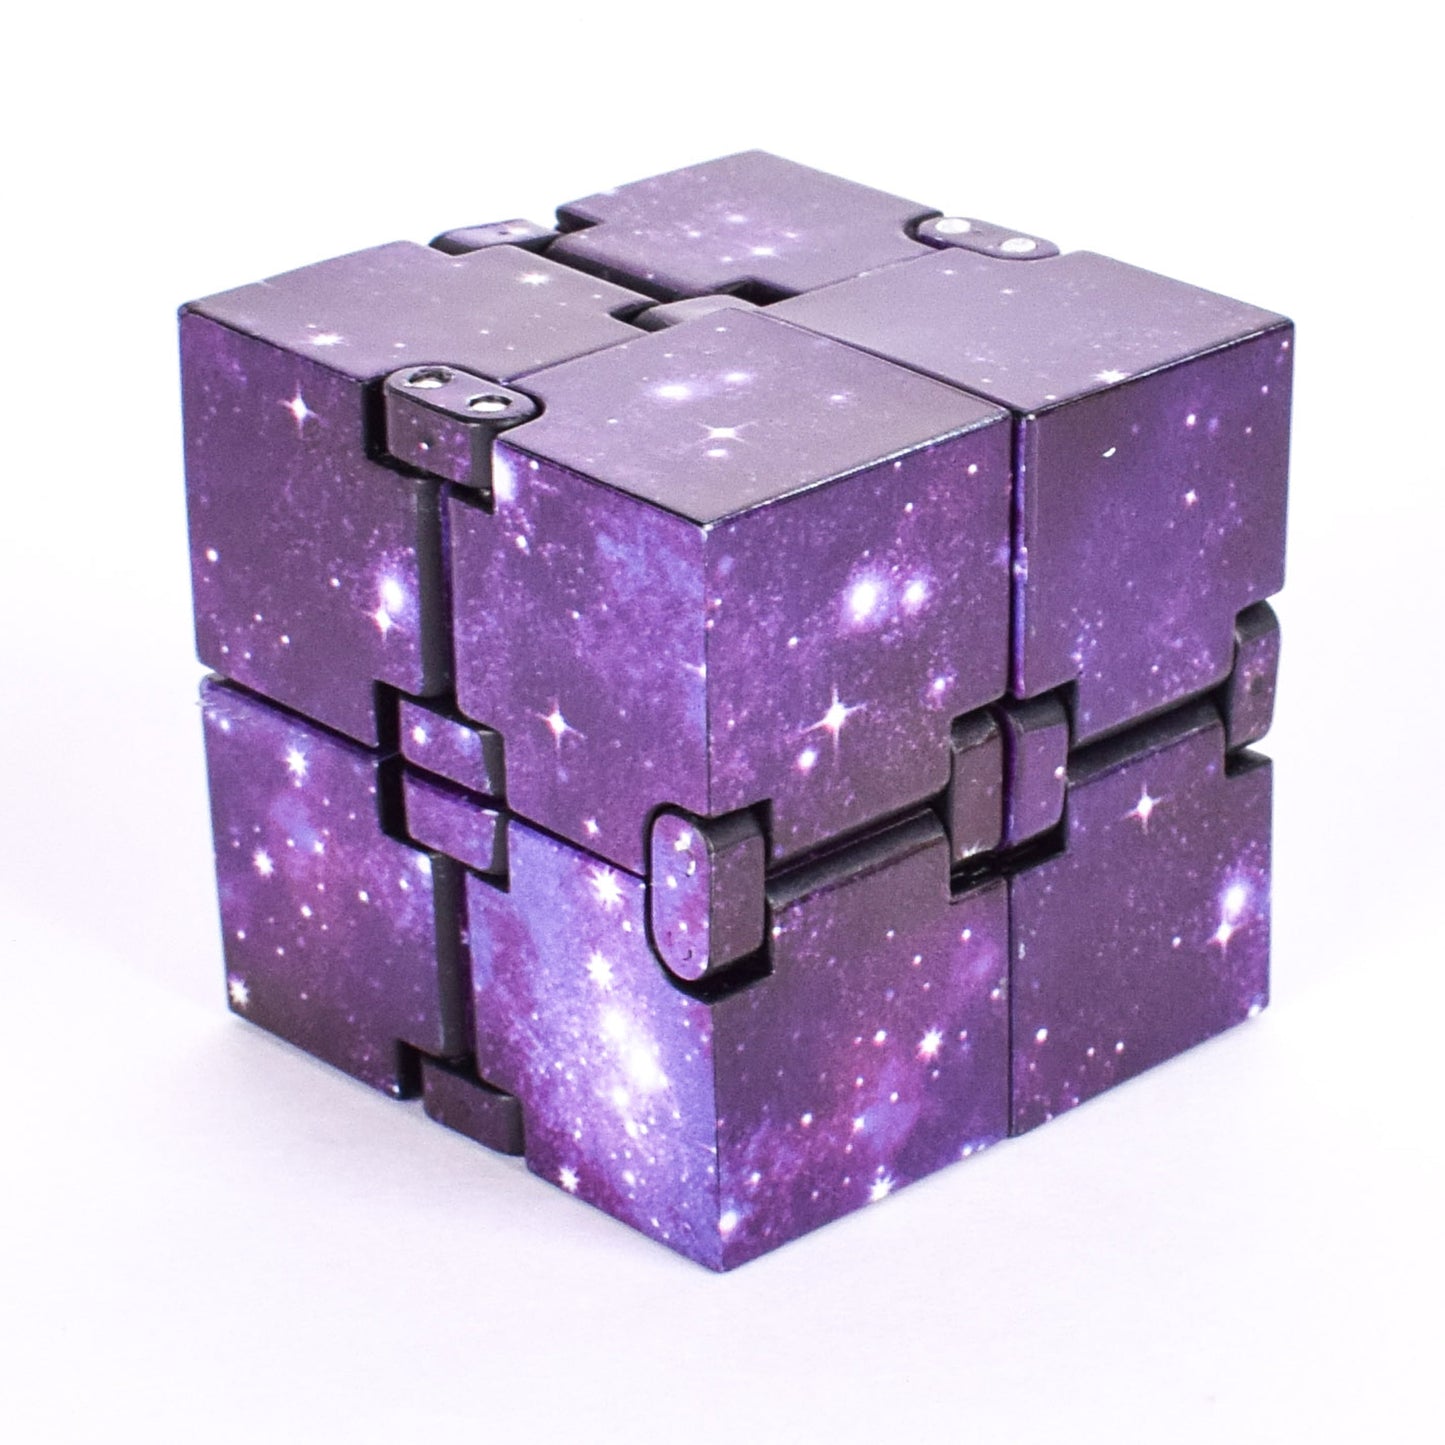 Διαδραστικό παιχνίδι κατά του στρες, Infinity Cube, Πολύχρωμο, για παιδιά και ενήλικες